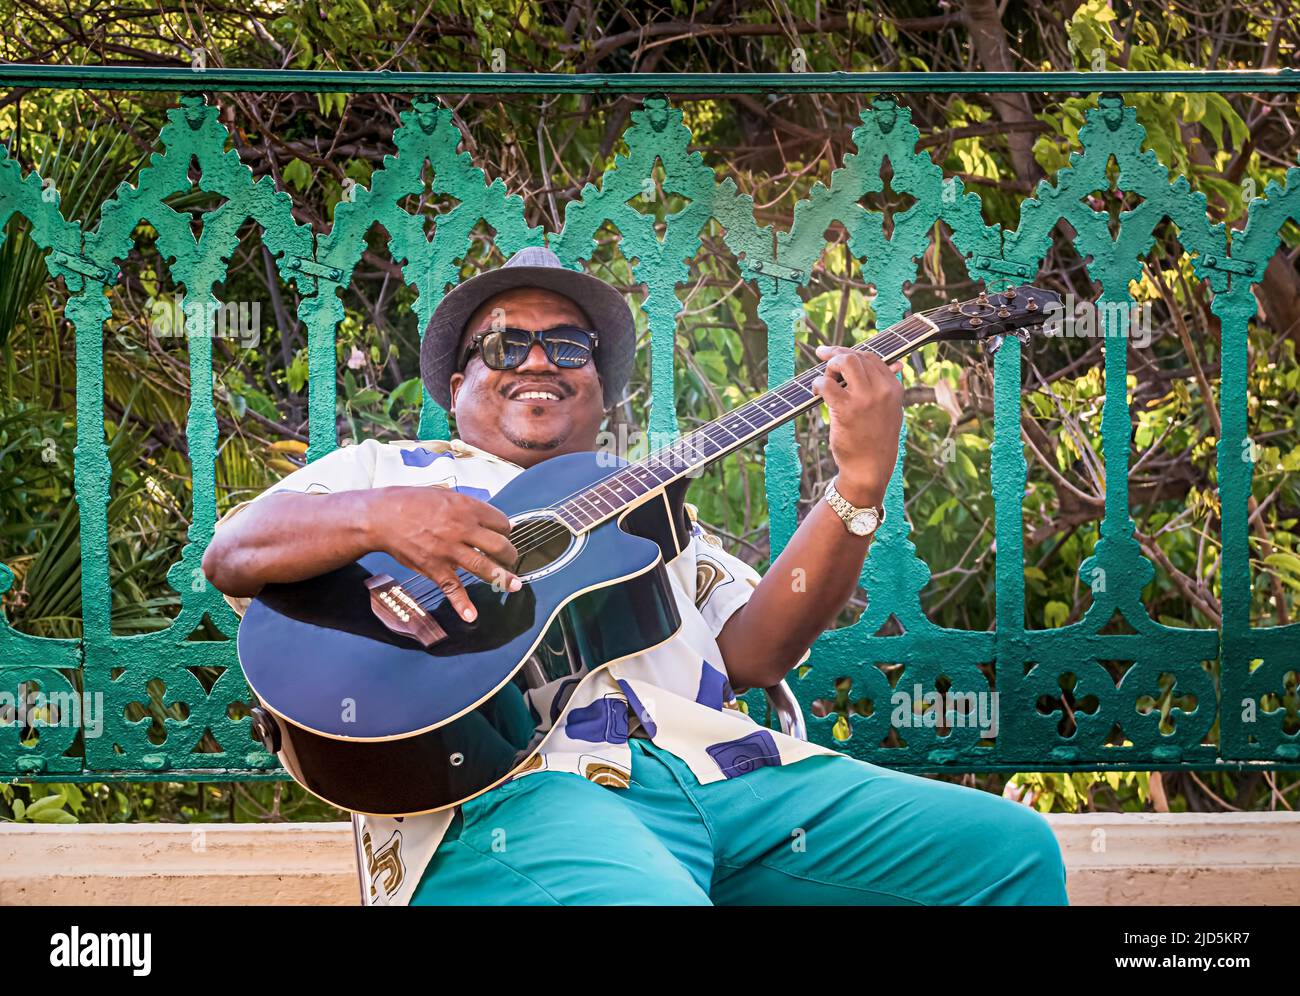 Guitariste jouant de la musique au Palacio de Valle à Cienfuegos, Cuba Banque D'Images